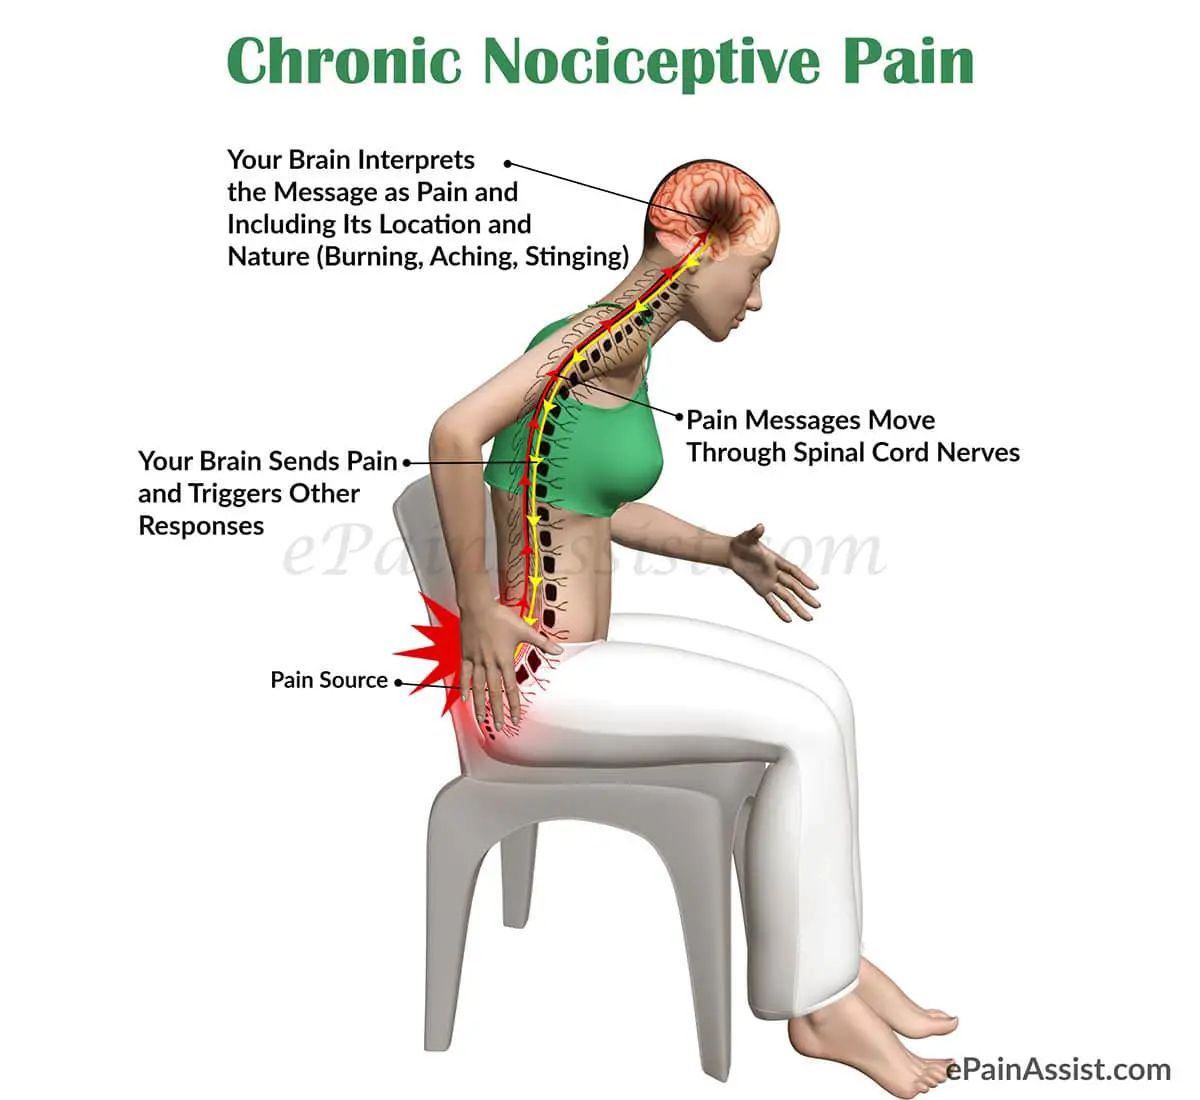 Chronic Nociceptive Pain